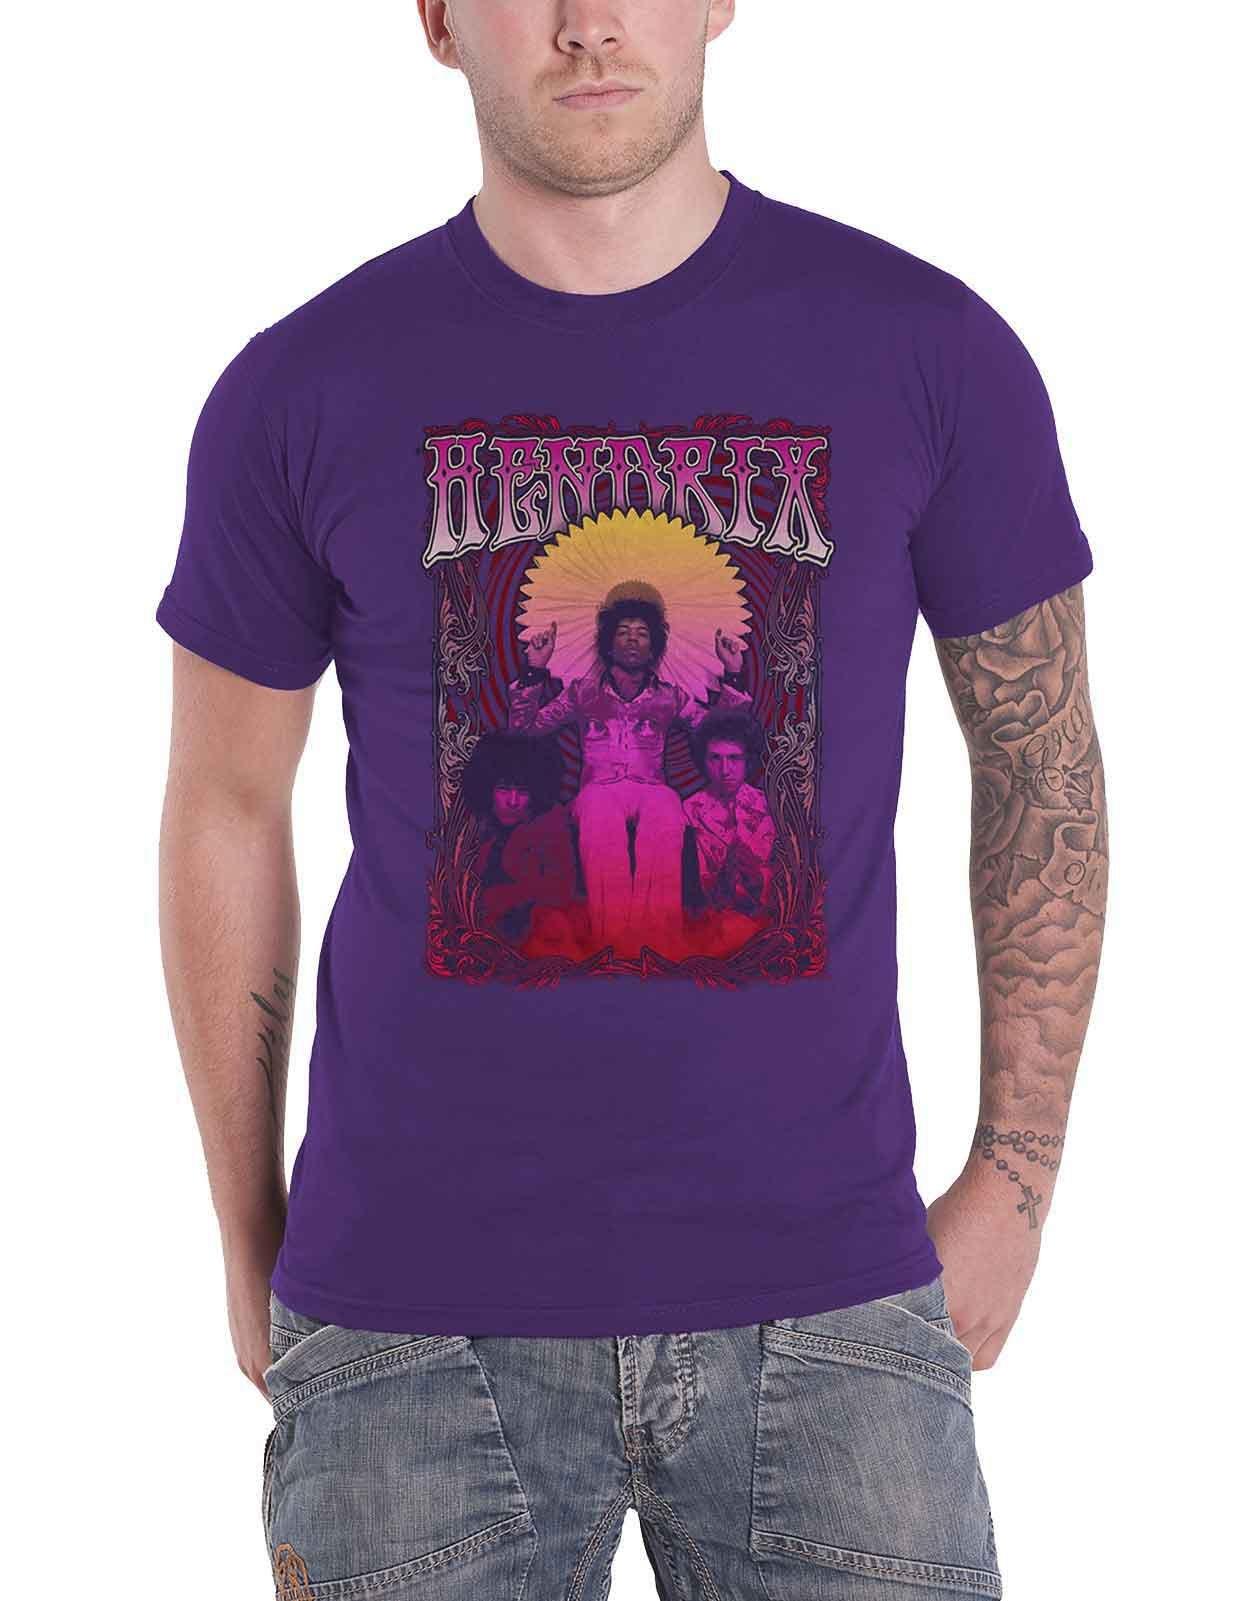 Футболка «Колесо обозрения Карла» Jimi Hendrix, фиолетовый темно фиолетовая мужская черная футболка с графическим рисунком футболка с фанатом рок группы размер s 3xl модная футболка топ футболка